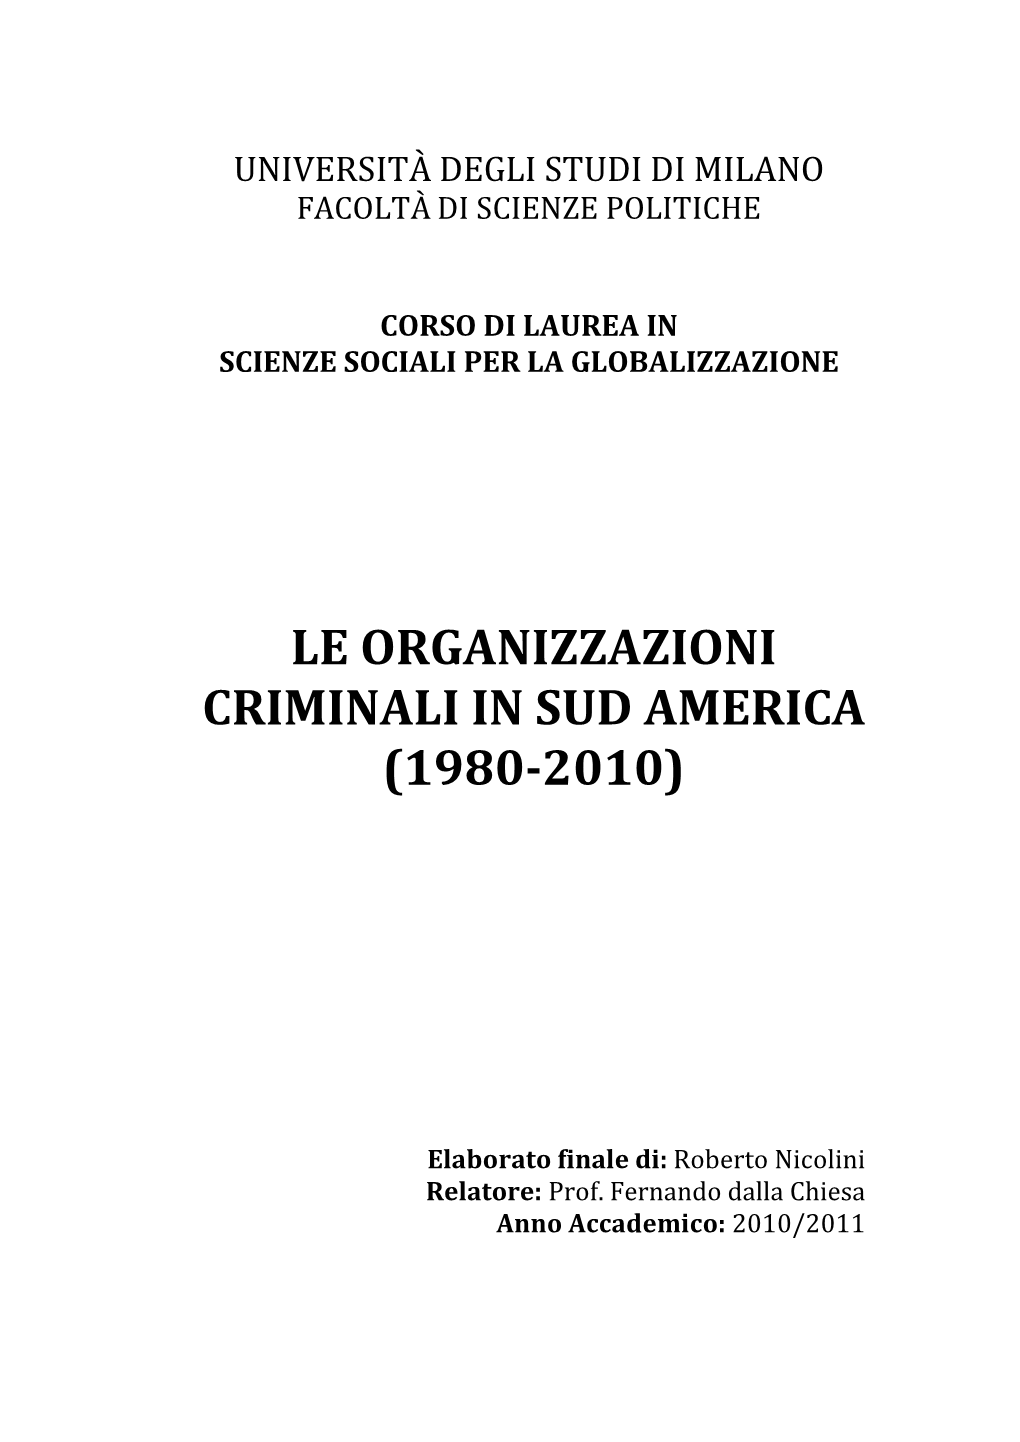 Le Organizzazioni Criminali in Sud America (1980-2010)